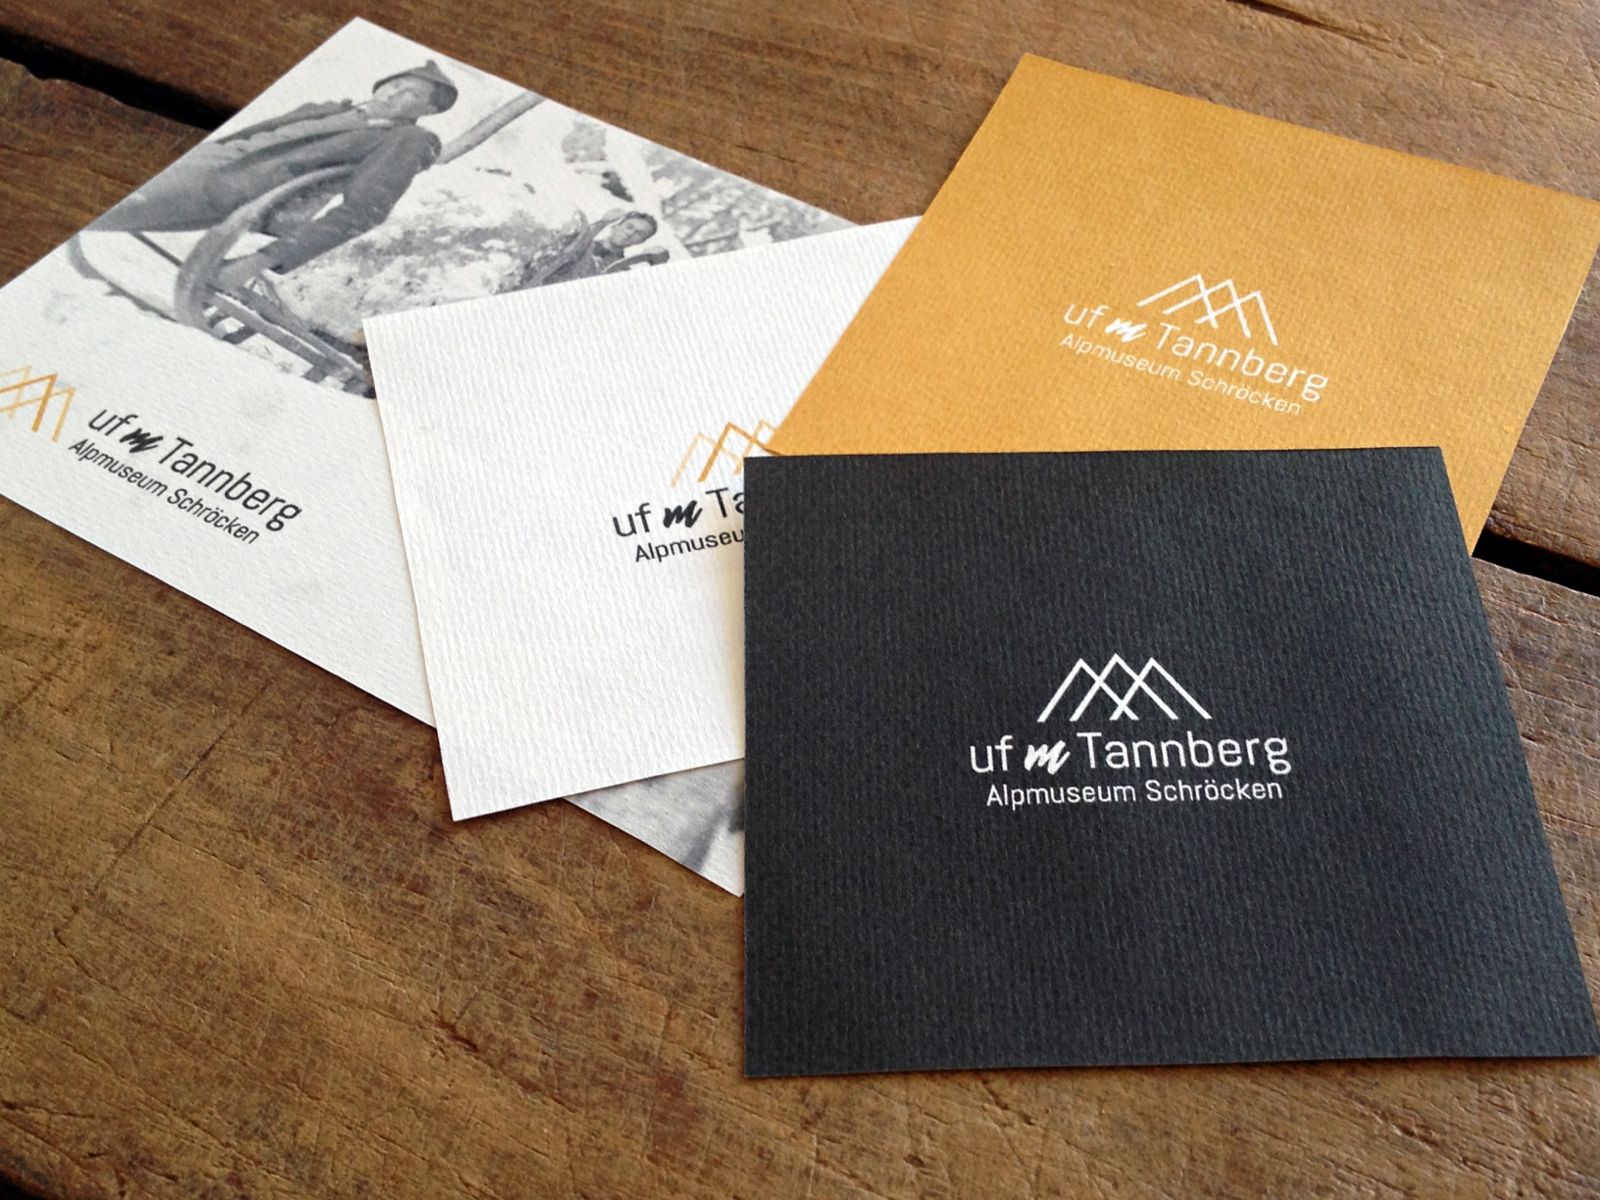 Logo und Flyer für das Alpmuseum Schröcken